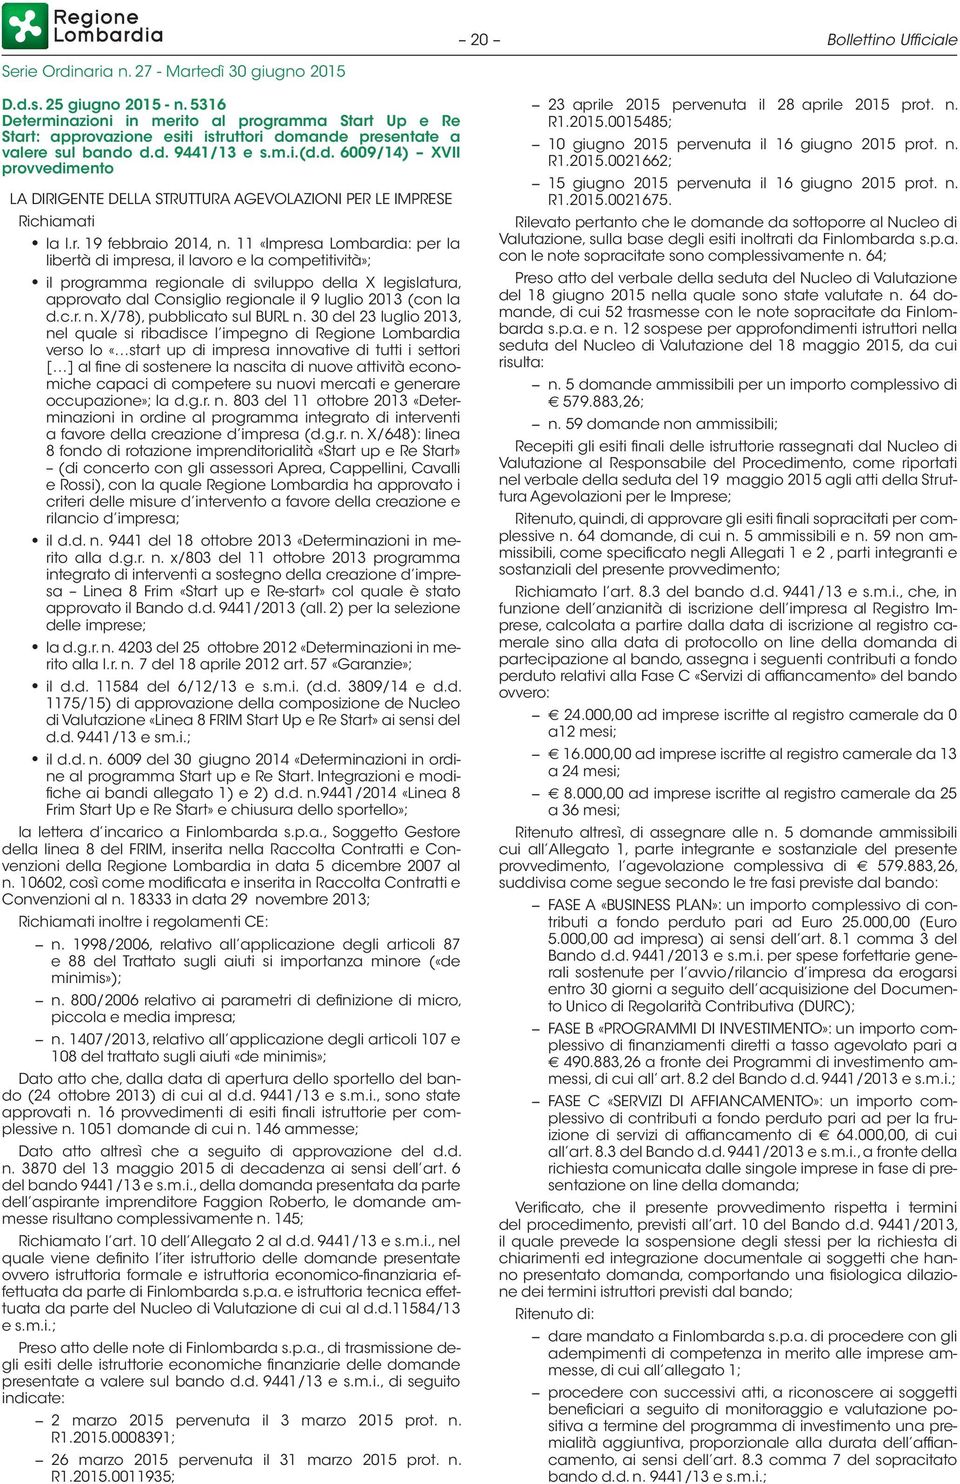 11 «Impresa Lombardia: per la libertà di impresa, il lavoro e la competitività»; il programma regionale di sviluppo della X legislatura, approvato dal Consiglio regionale il 9 luglio 2013 (con la d.c.r. n.